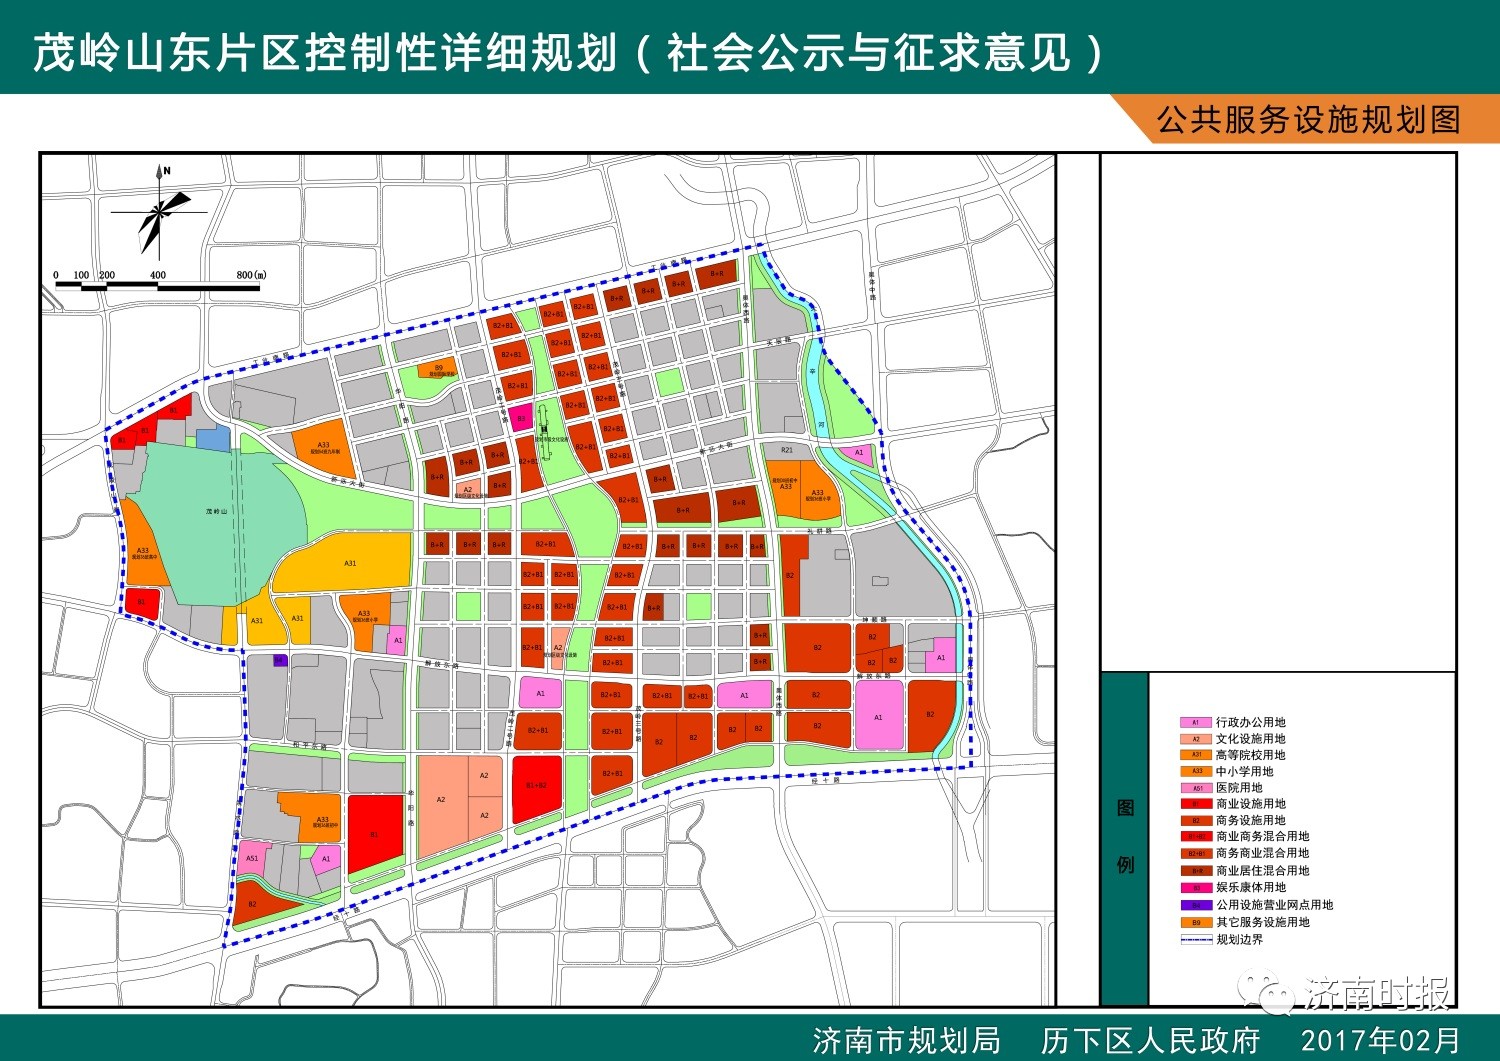 济南市5大片区最新规划出炉!cbd周边要建6所学校